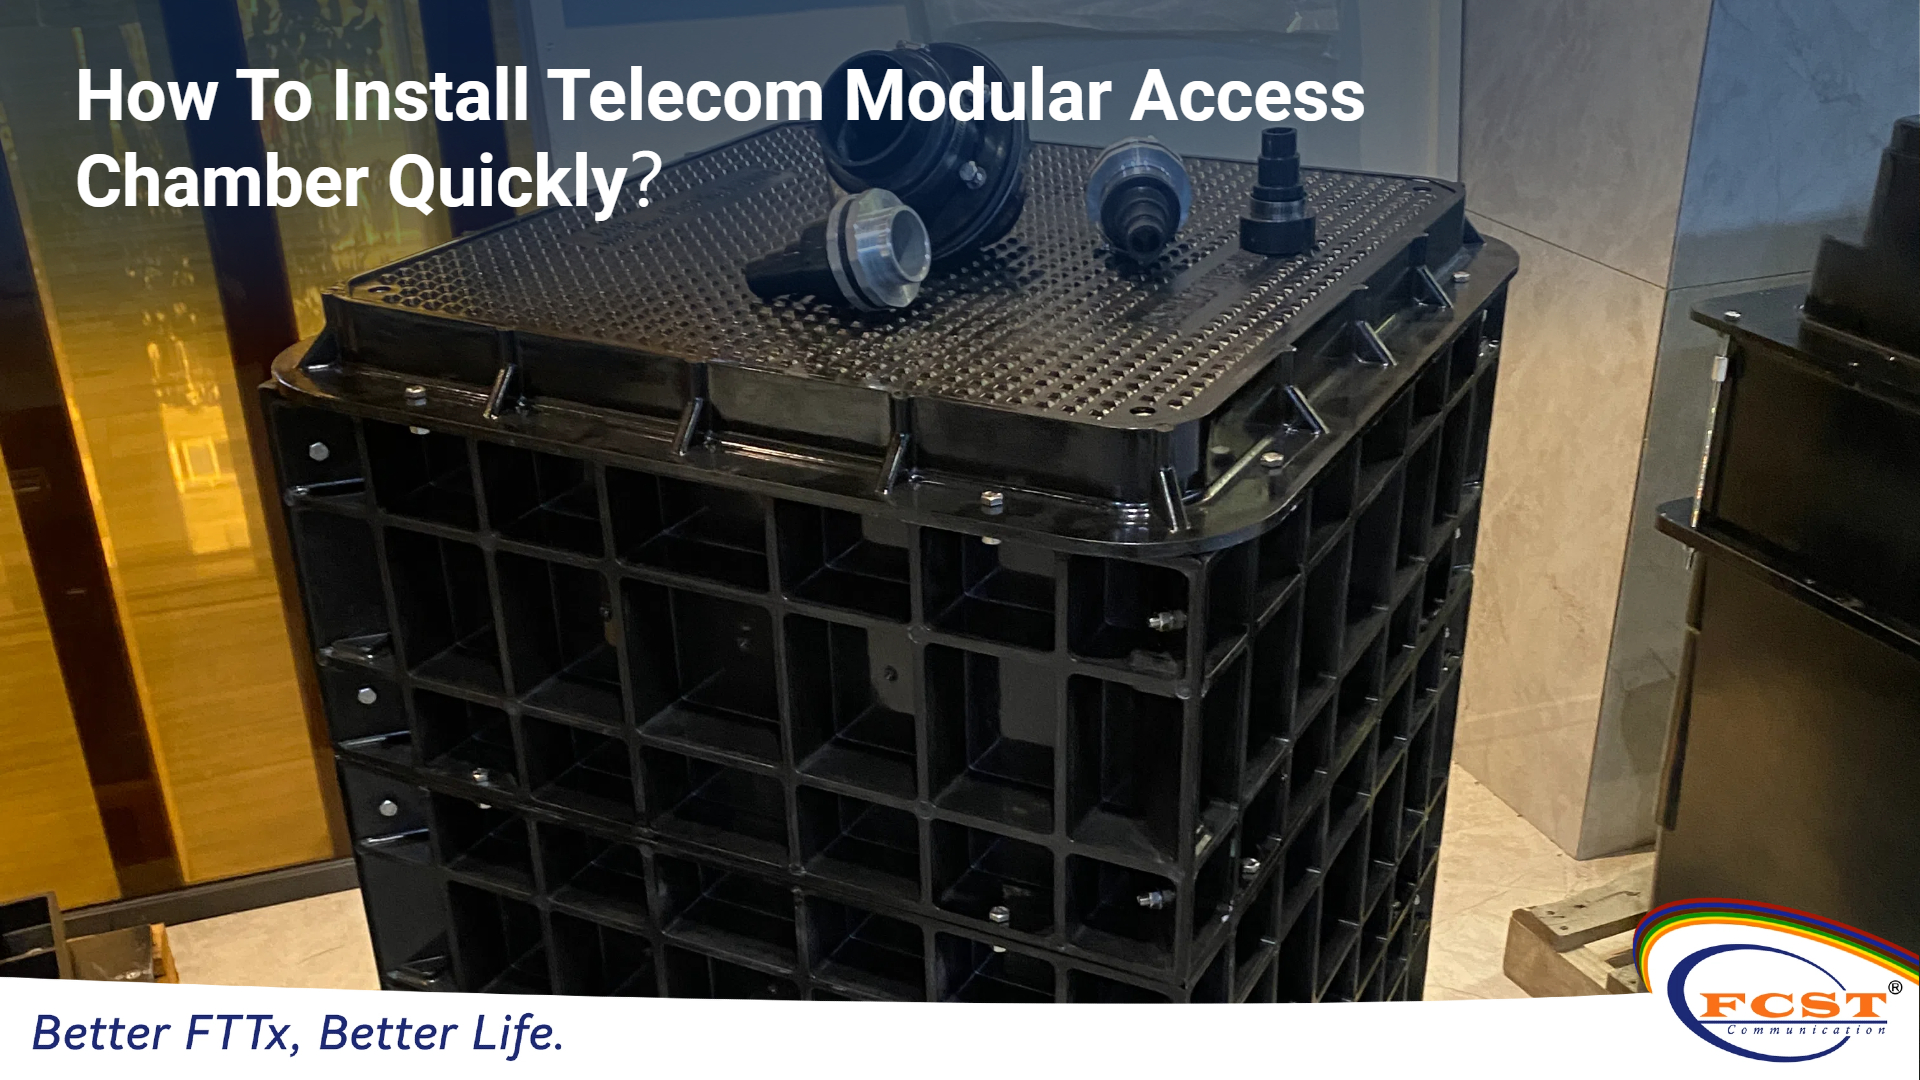 Comment installer rapidement une chambre d'accès modulaire télécom ?